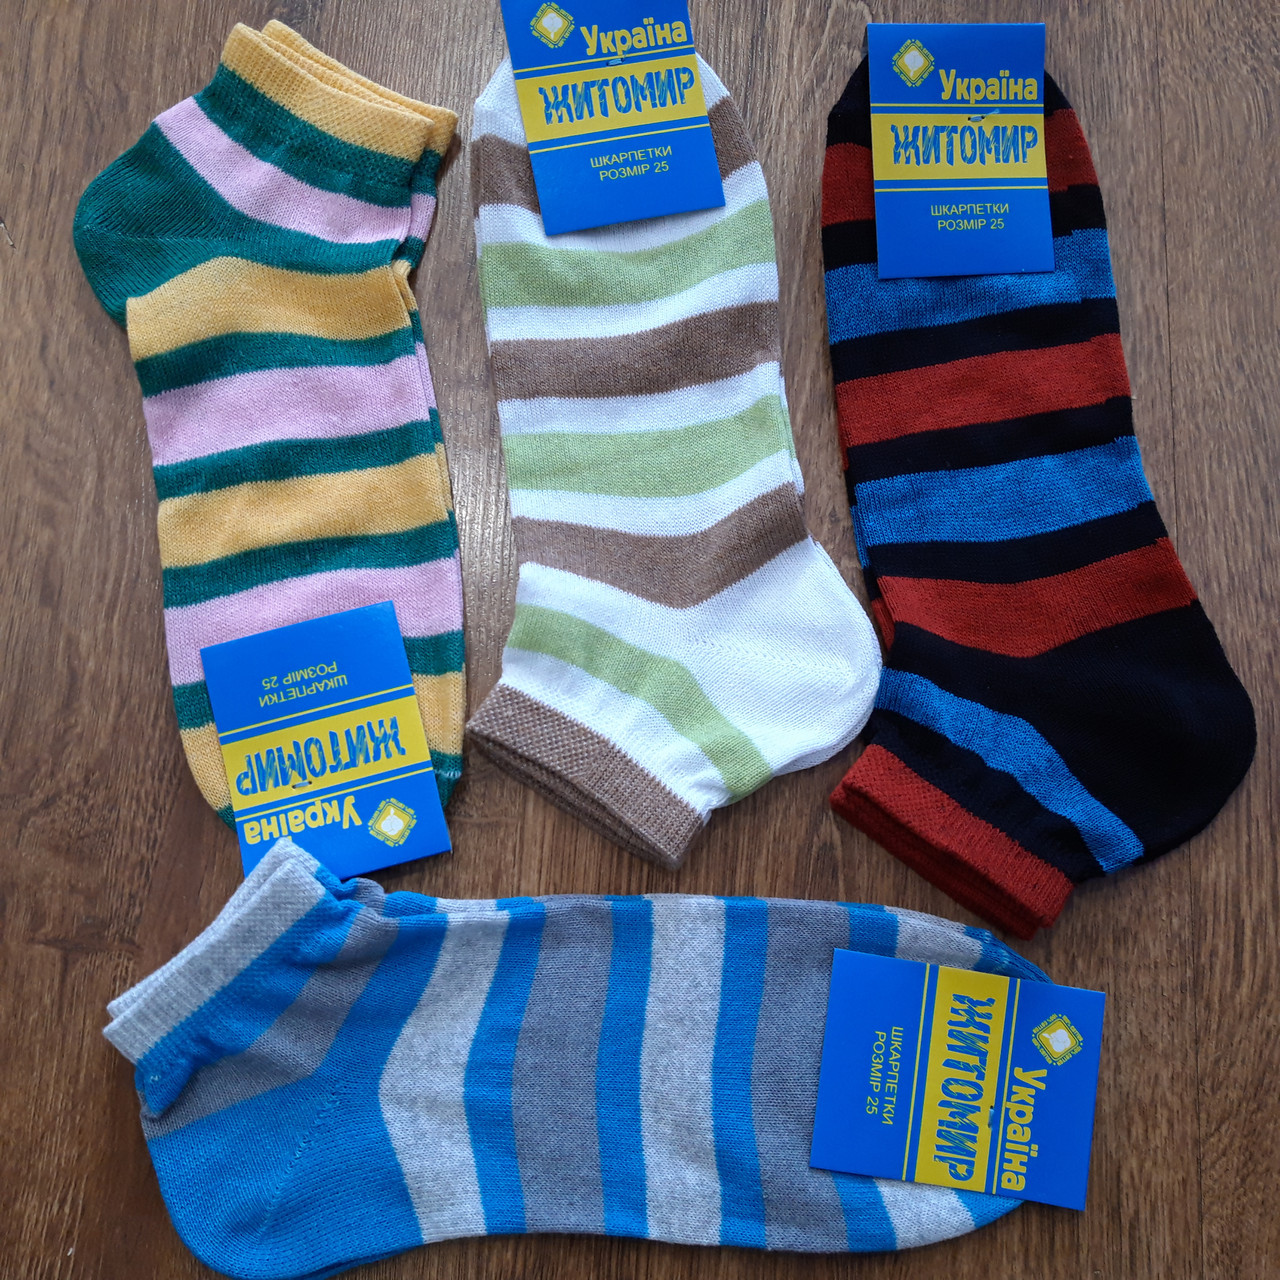 Жіночі шкарпетки, хб "Житомир" 25 (39-40)